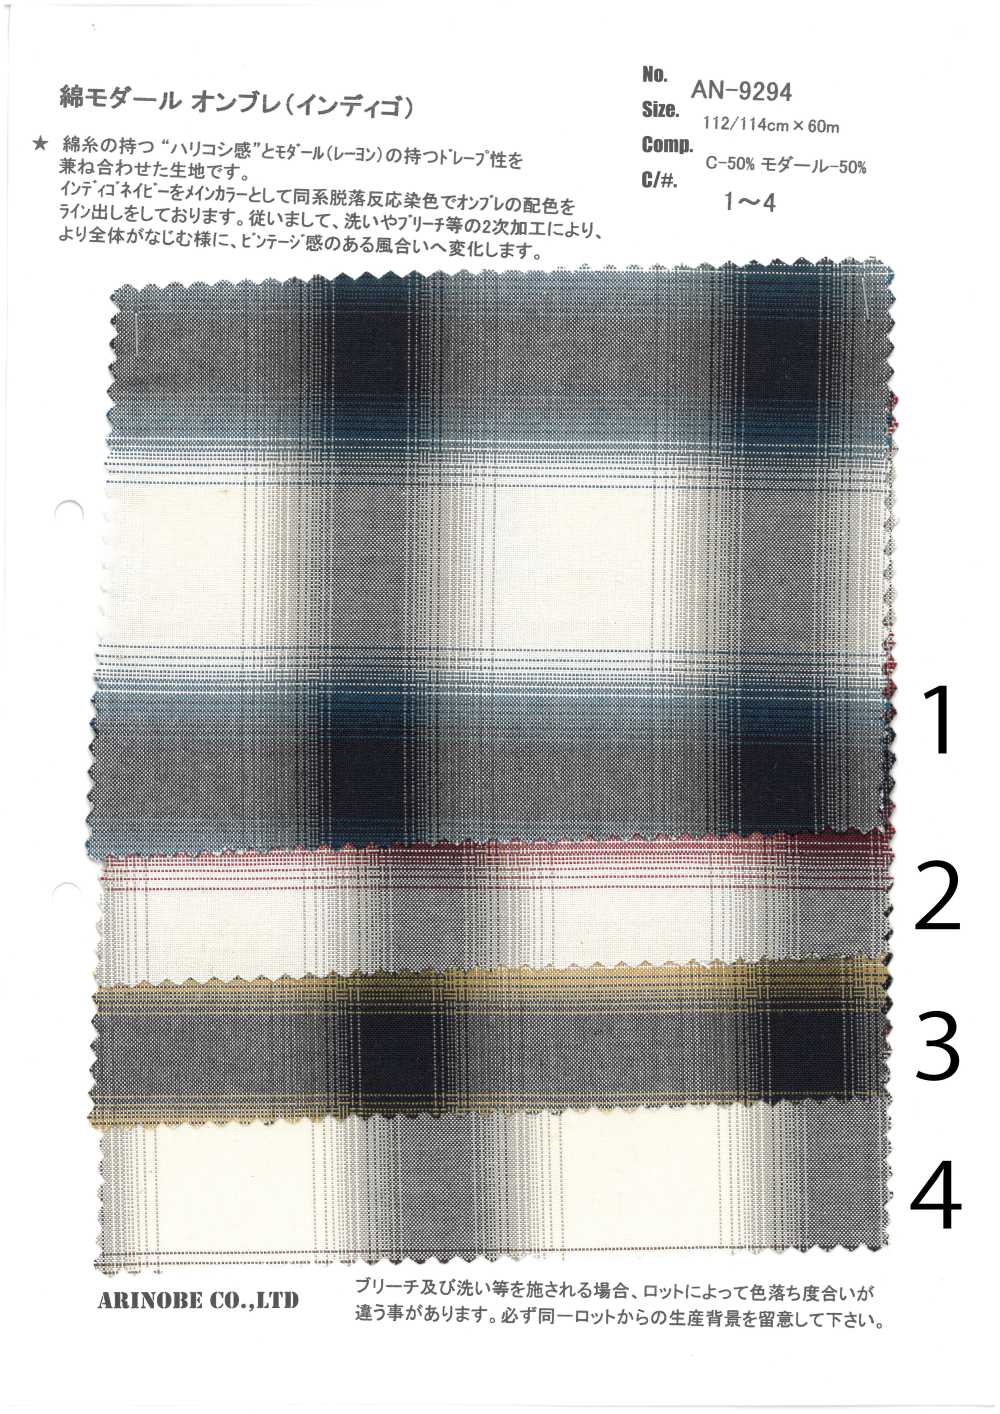 AN-9294 Modal Algodón Indigo Ombre[Fabrica Textil] ARINOBE CO., LTD.